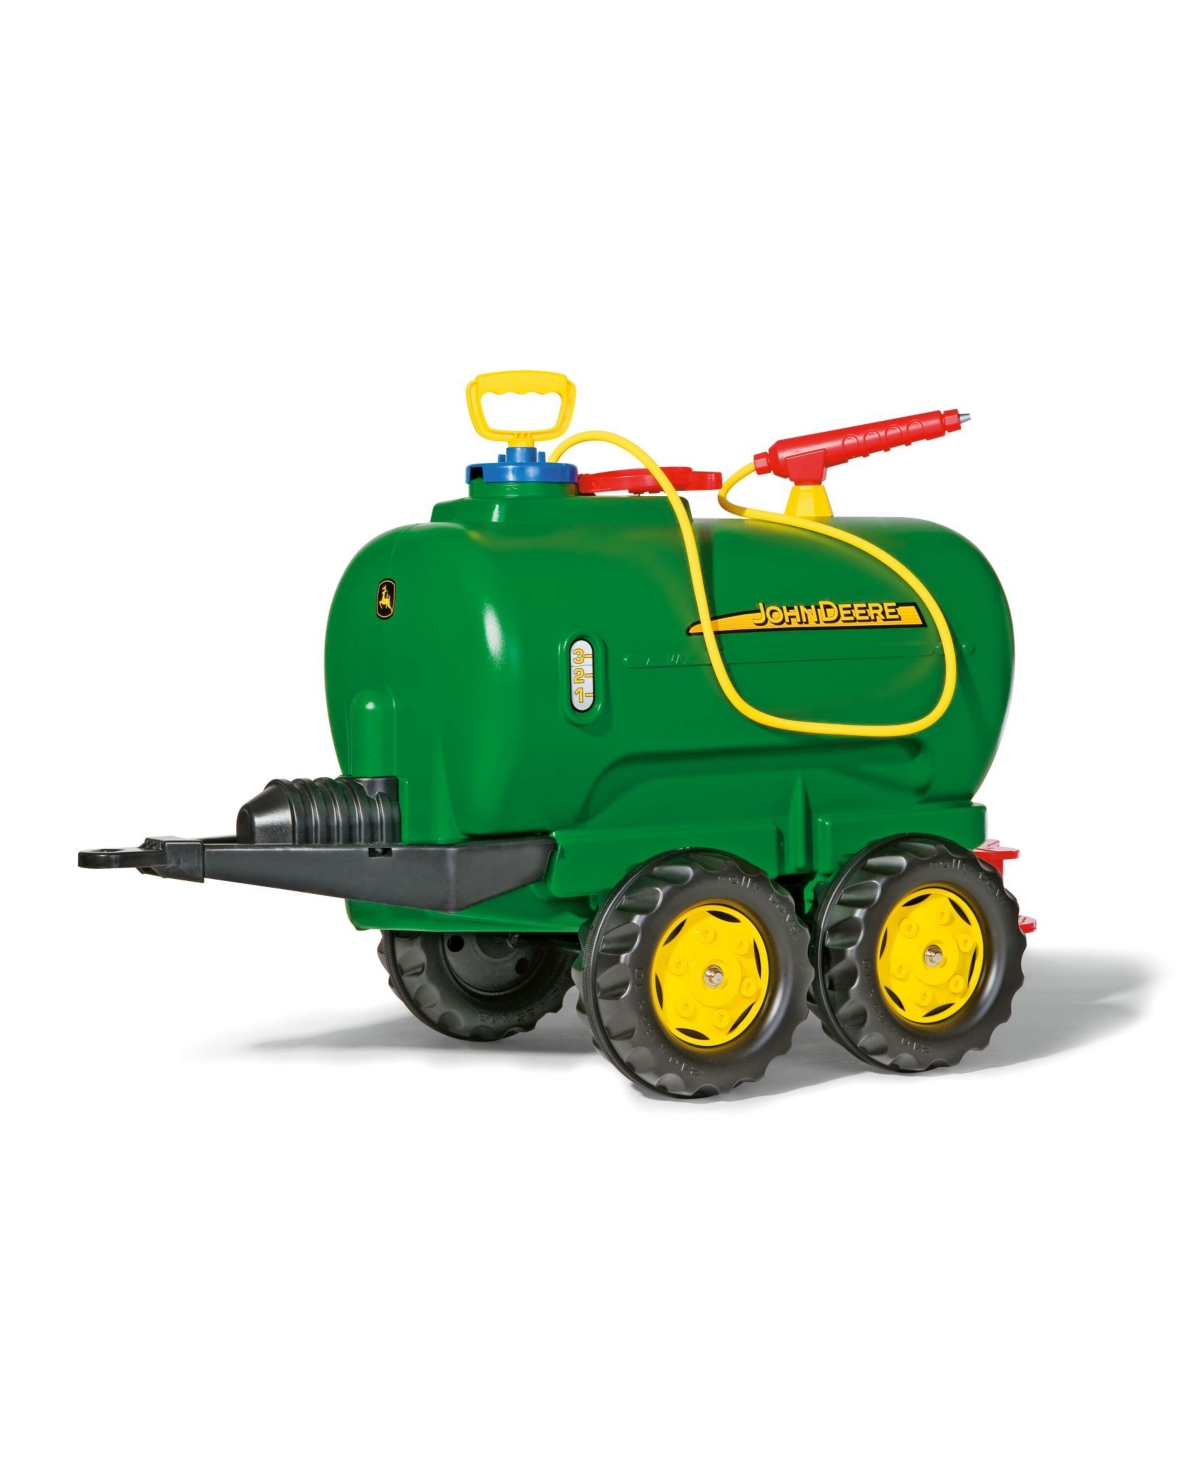 Rolly Toys John Deere Water Tanker In Green